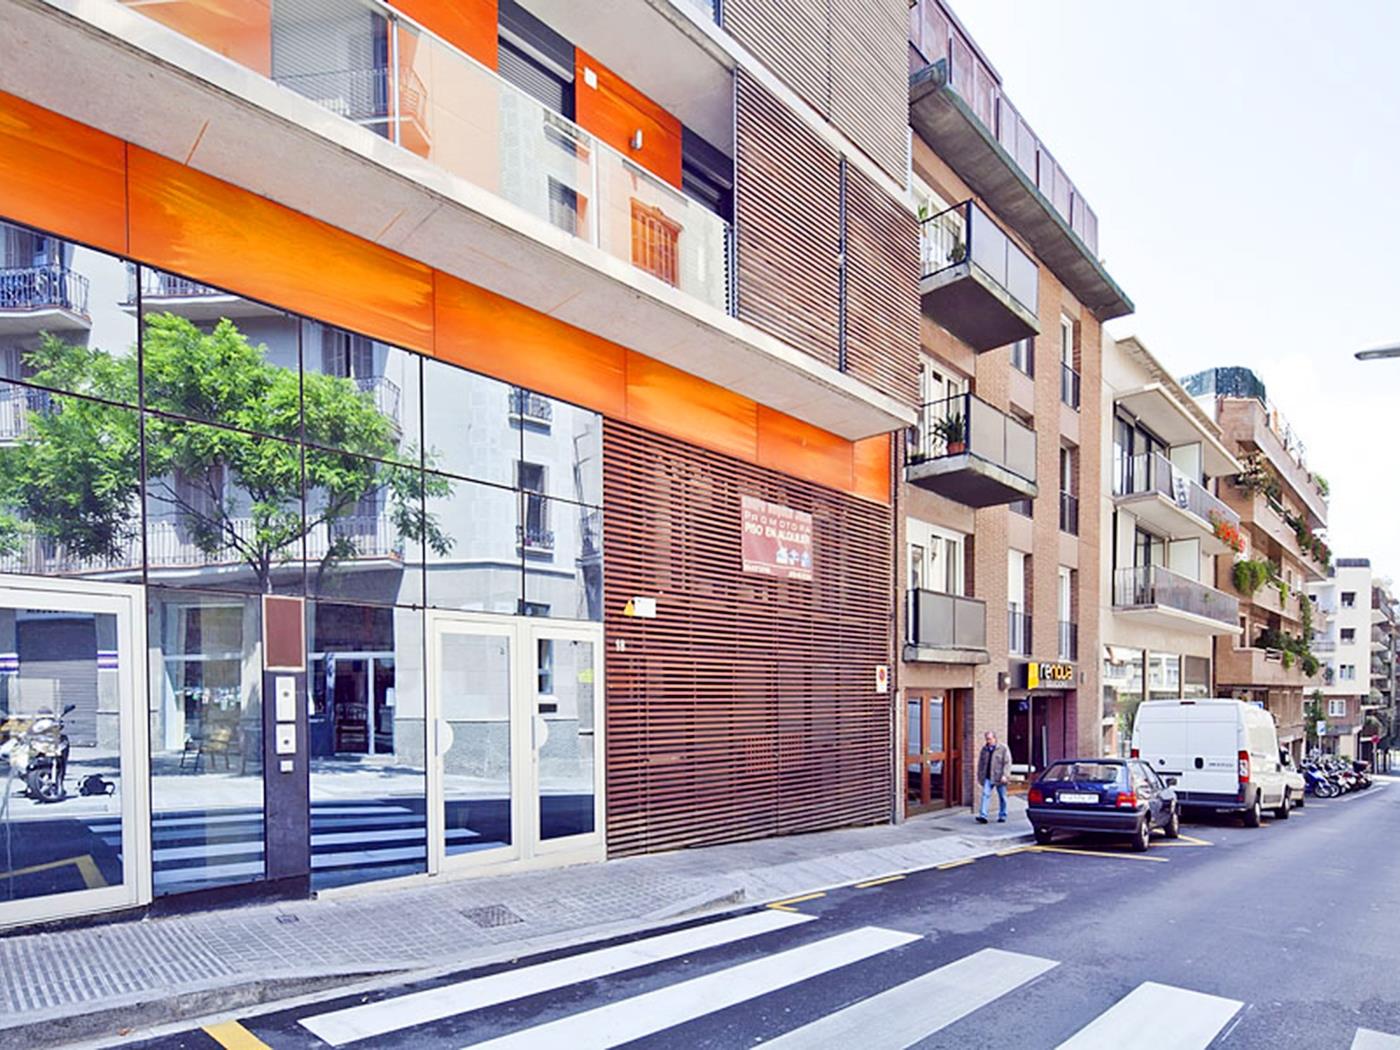 شقة سانت جيرفاسي بالقرب من مركز المدينة - My Space barcelona شقة